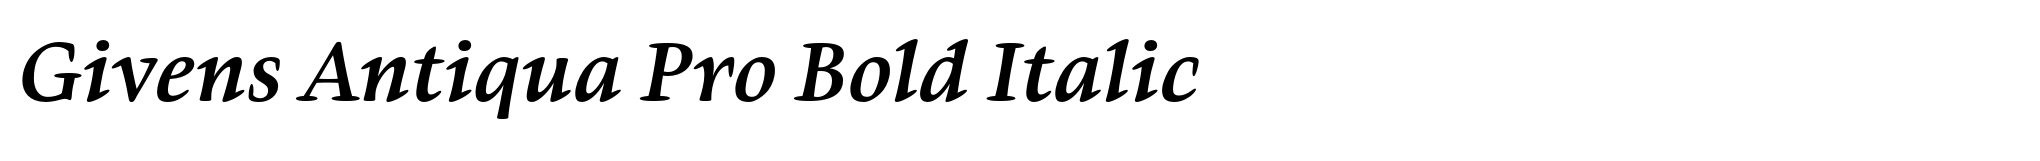 Givens Antiqua Pro Bold Italic image